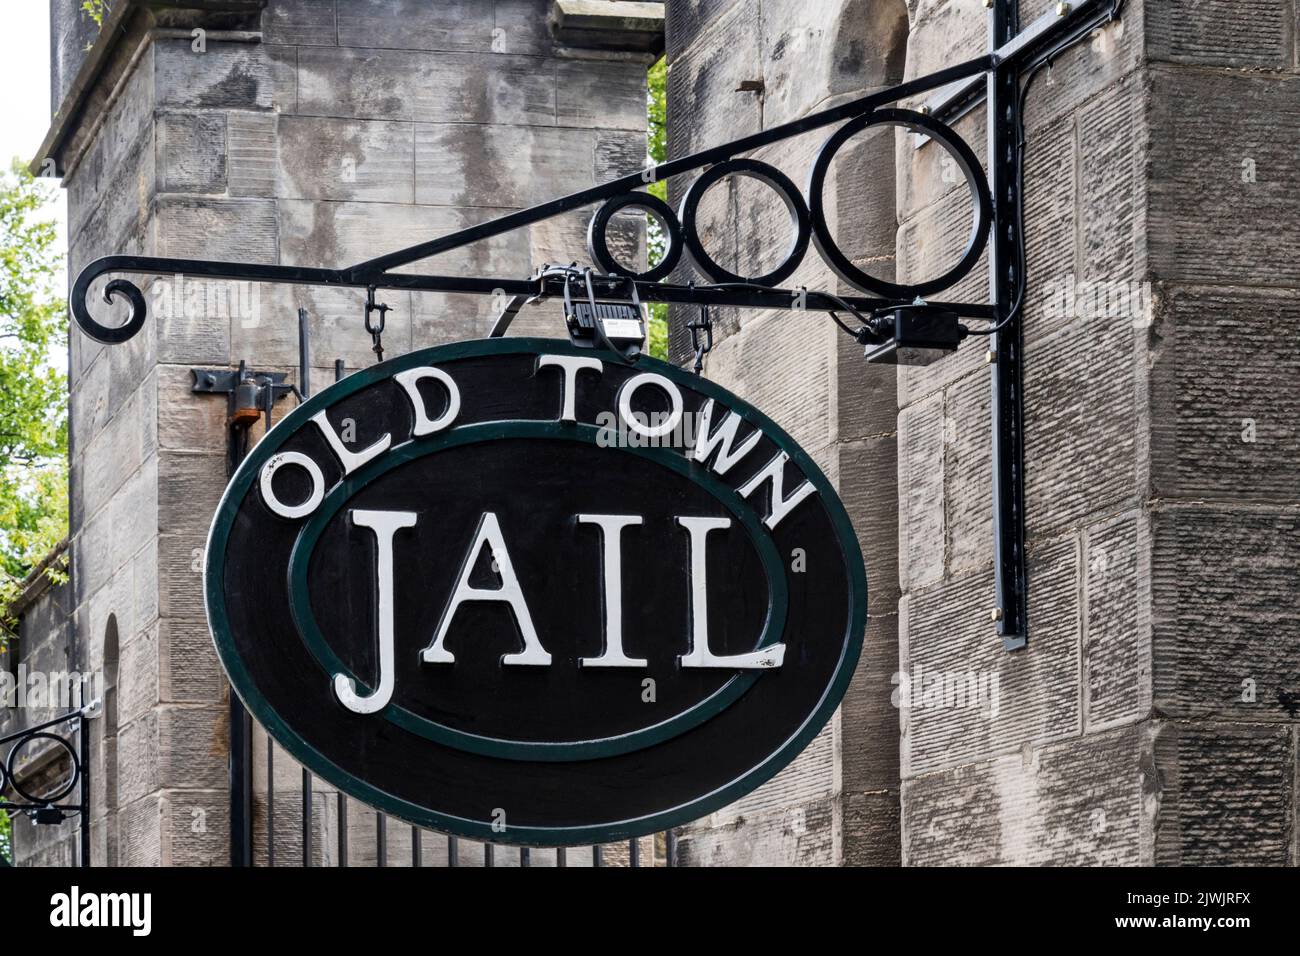 Panneau pour l'attraction touristique Old Town Jail à Stirling, en Écosse. Banque D'Images